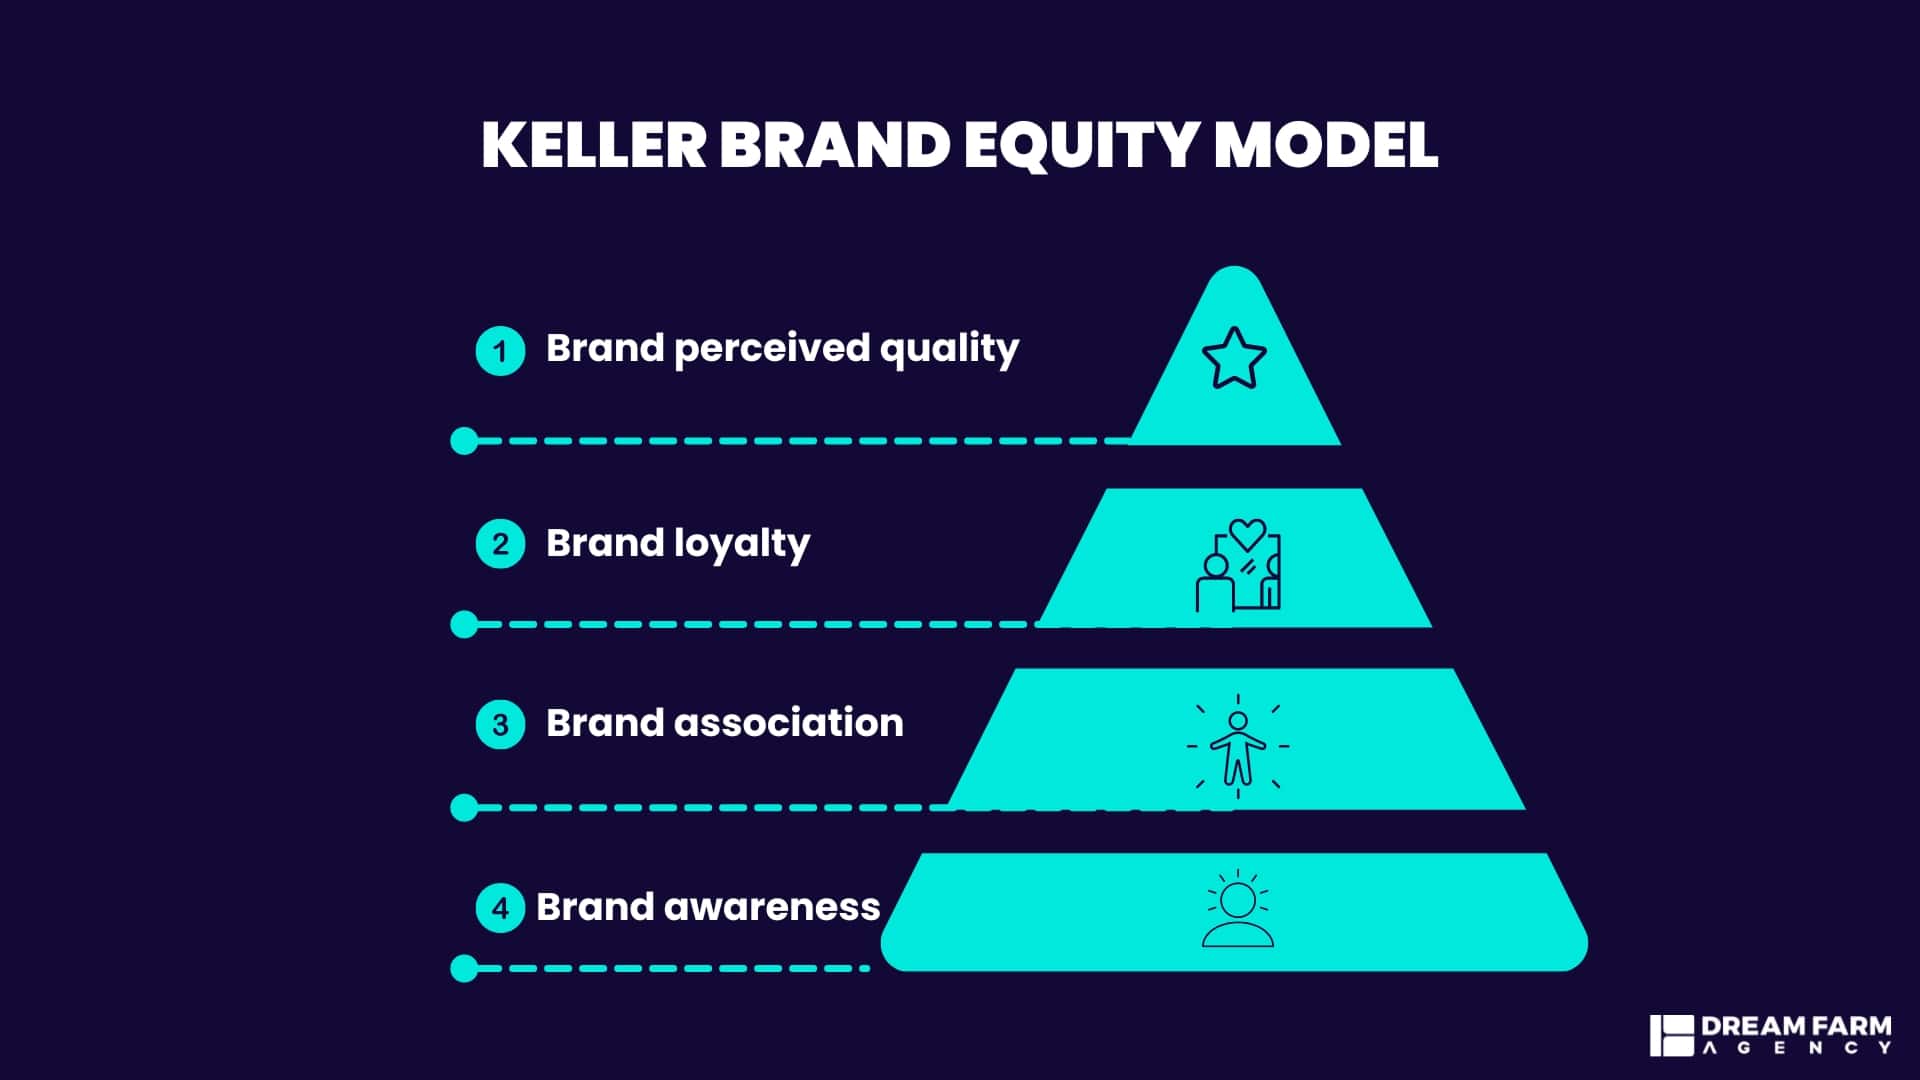 Keller Brand Equity Model